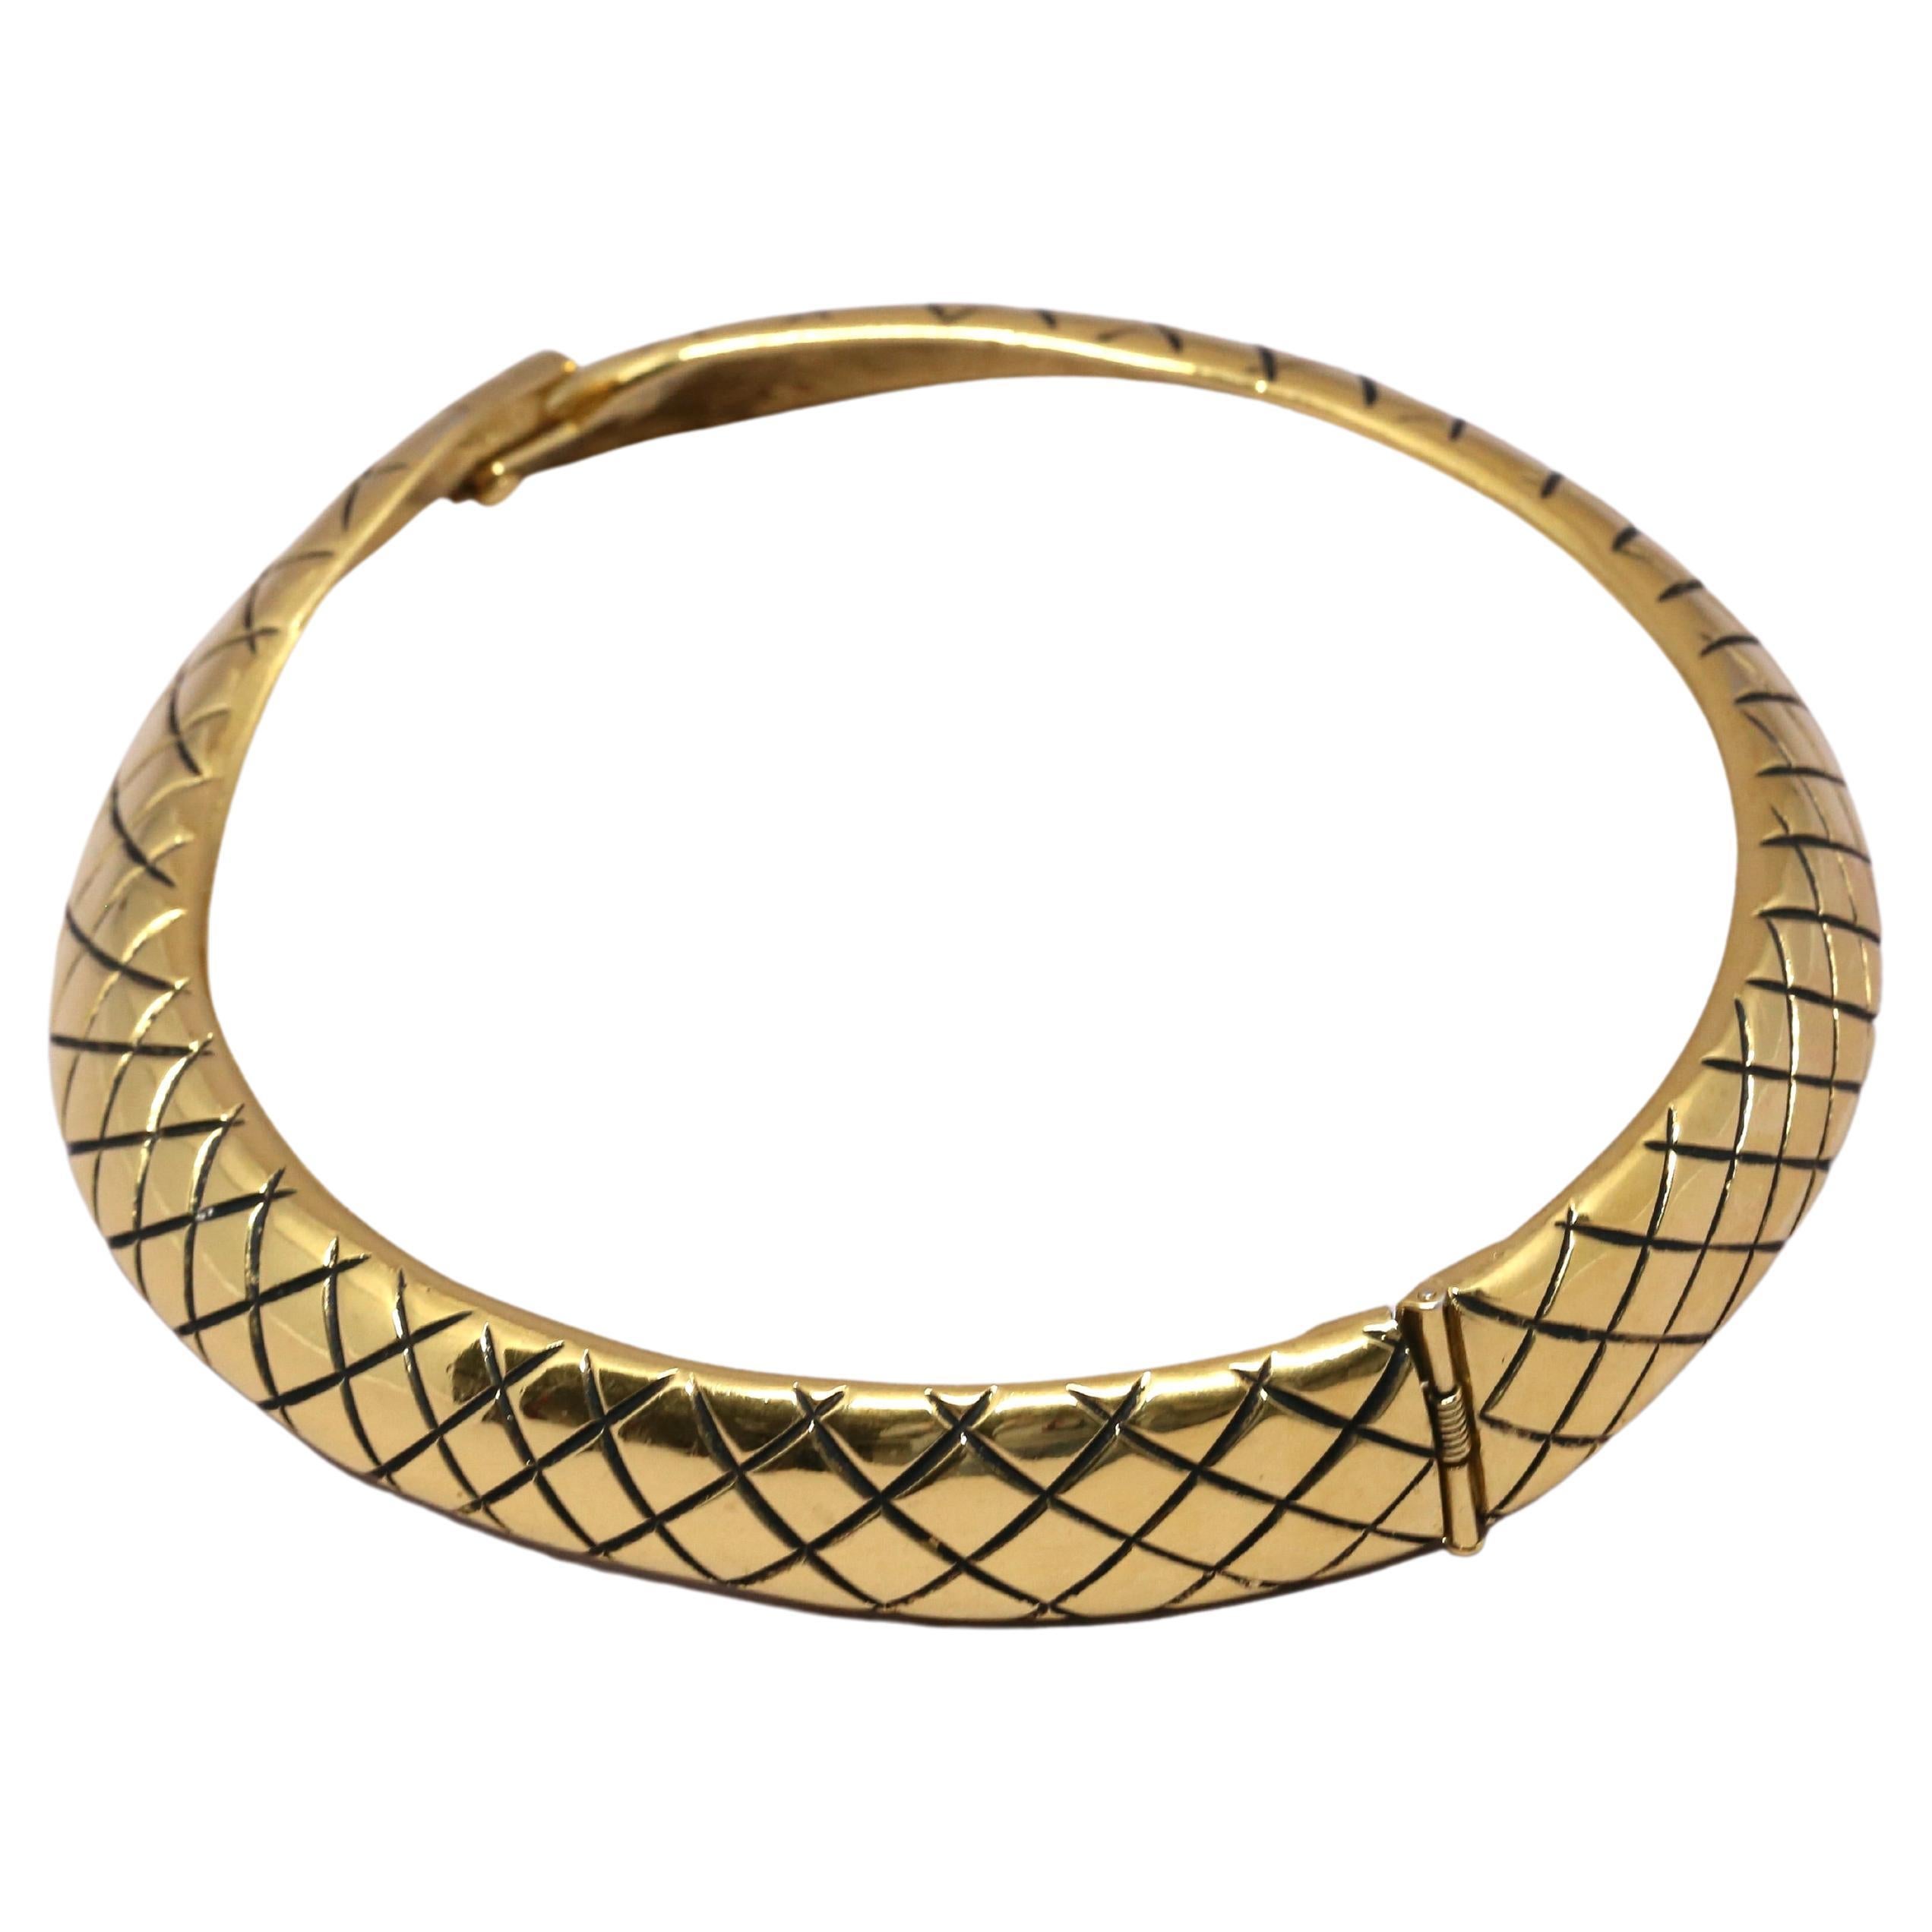 Collier très unique en métal doré en forme de serpent stylisé d'Yves Saint Laurent datant des années 1980. Convient à un cou de petite taille. Mesure approximativement 13-13.5